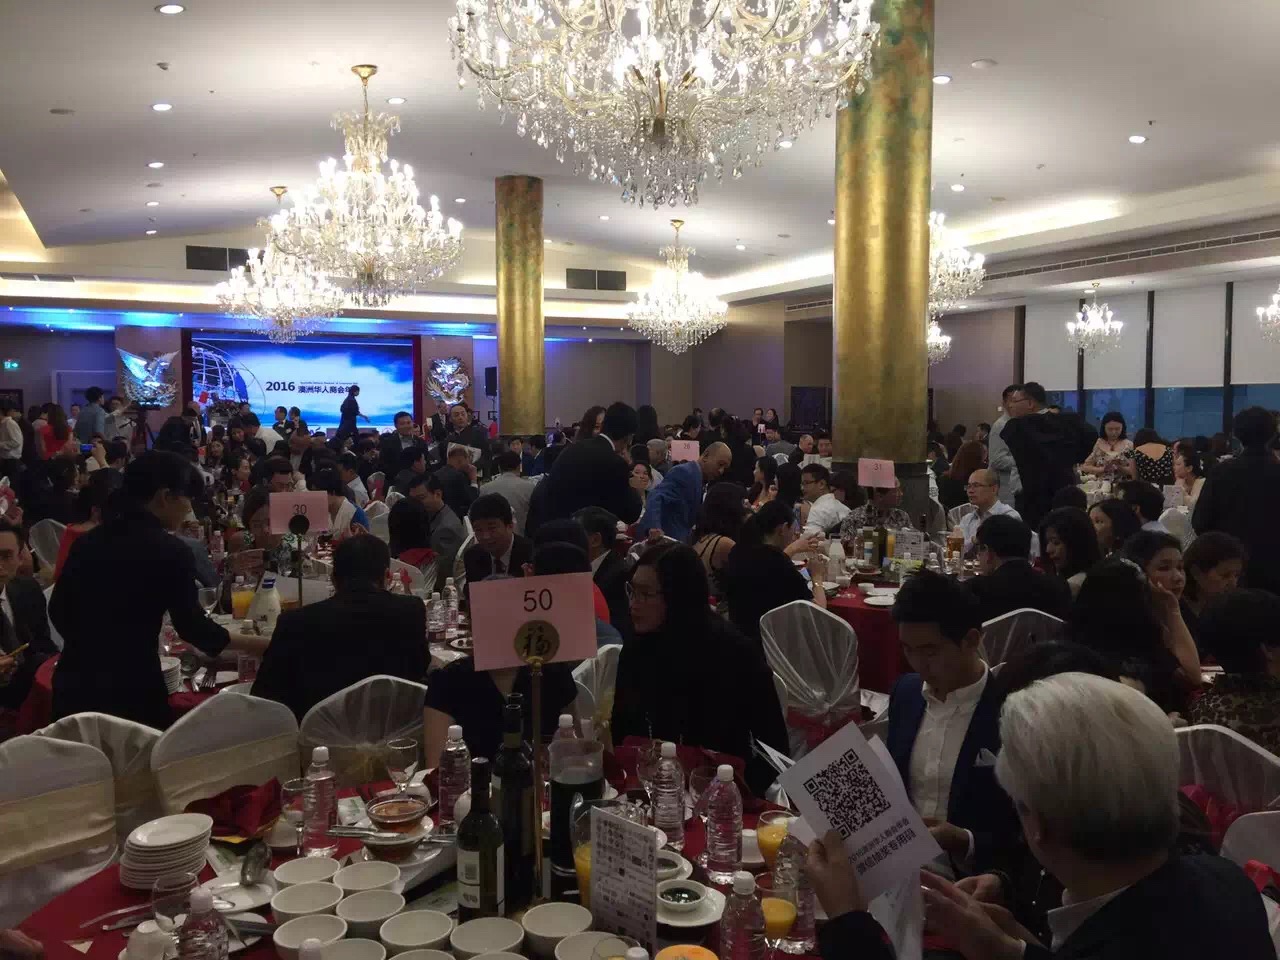 14 2016年澳洲华人商会年会在悉尼盛大举行  开创资源共享合作双赢新局面 